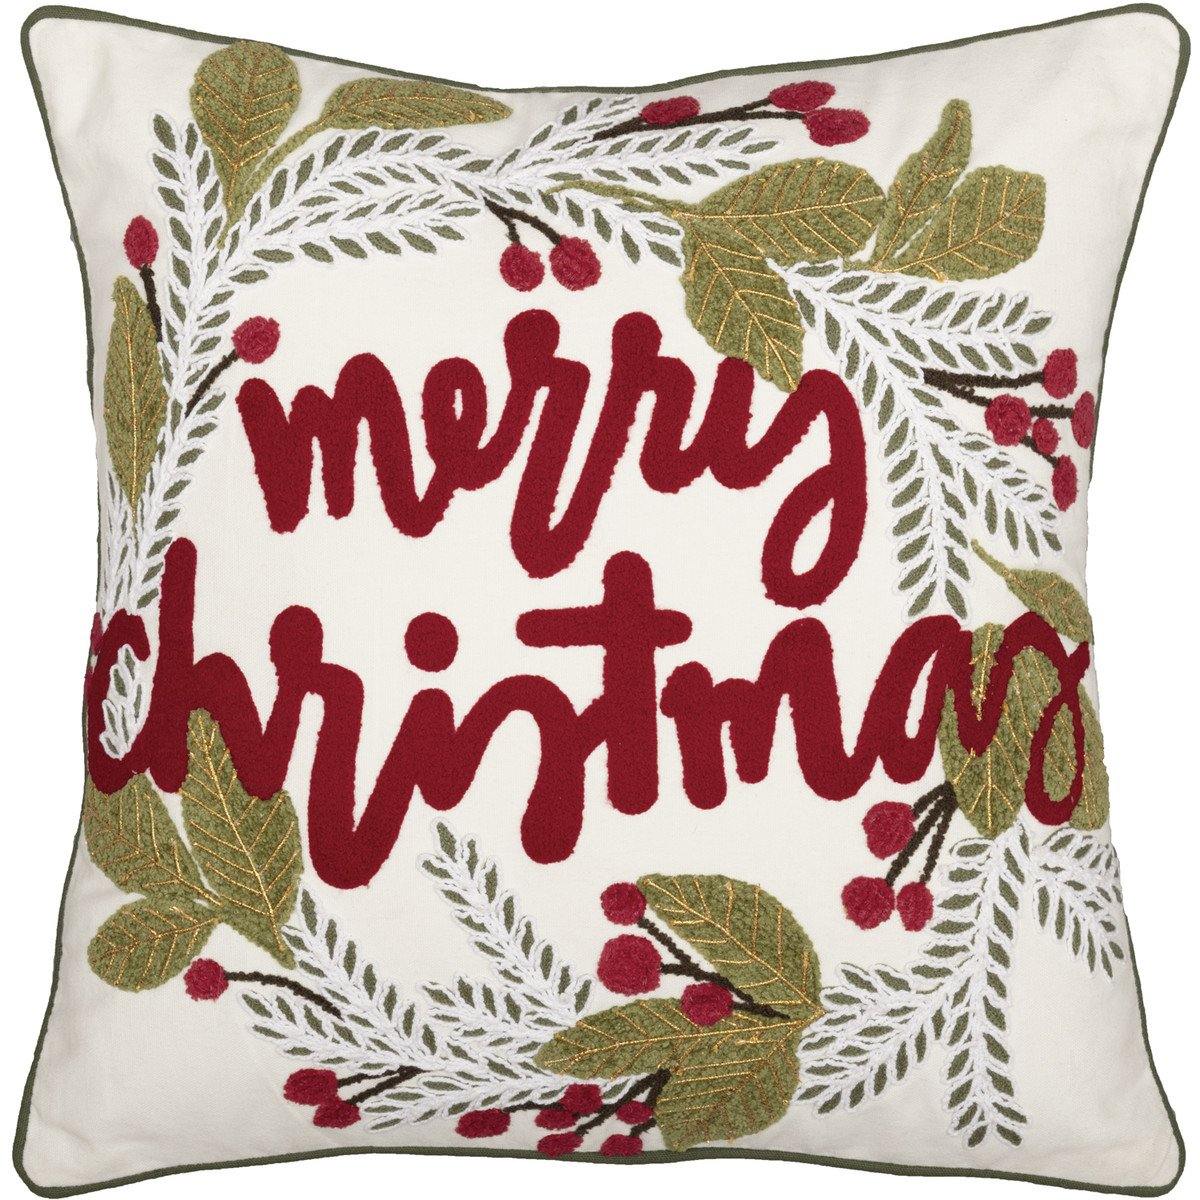 Merry Christmas Wreath Pillow 18"x18" - The Fox Decor